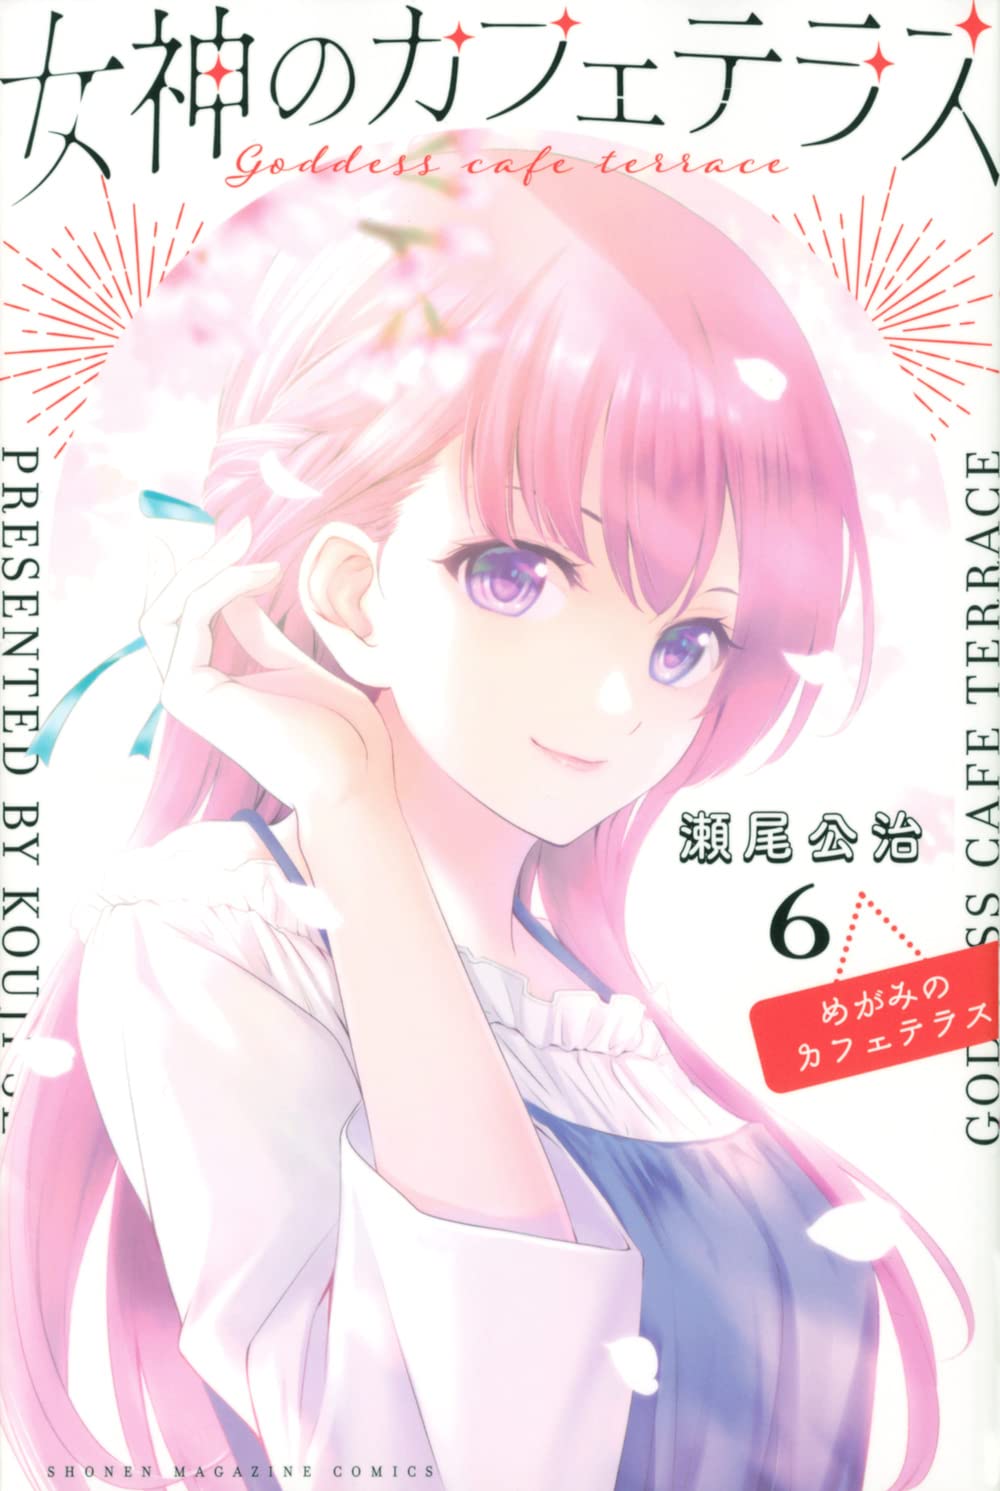 Megami no Café – Romance do autor de Fuuka e Kimi no Iru Machi tem anuncio  de anime - IntoxiAnime